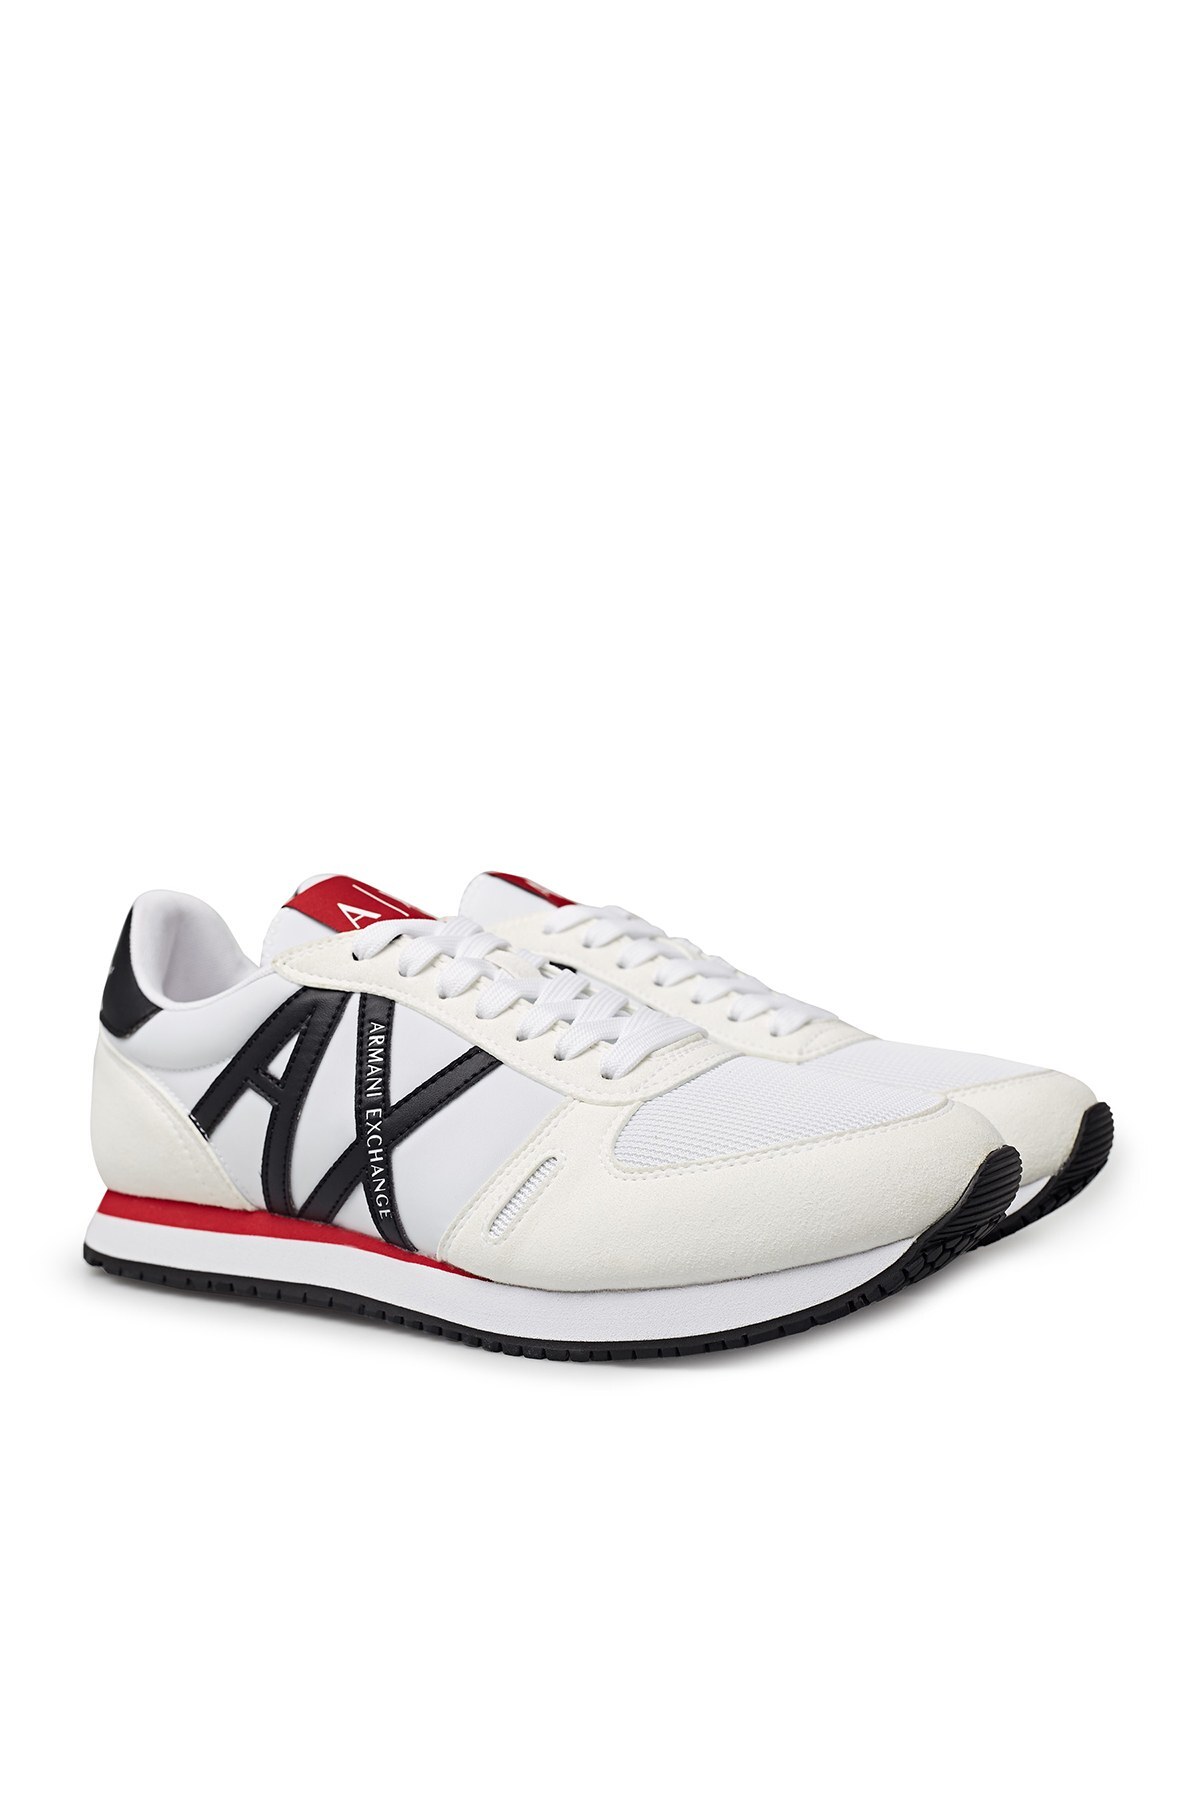 Armani Exchange Günlük Spor Erkek Ayakkabı XUX017 XCC68 K488 BEYAZ-SİYAH